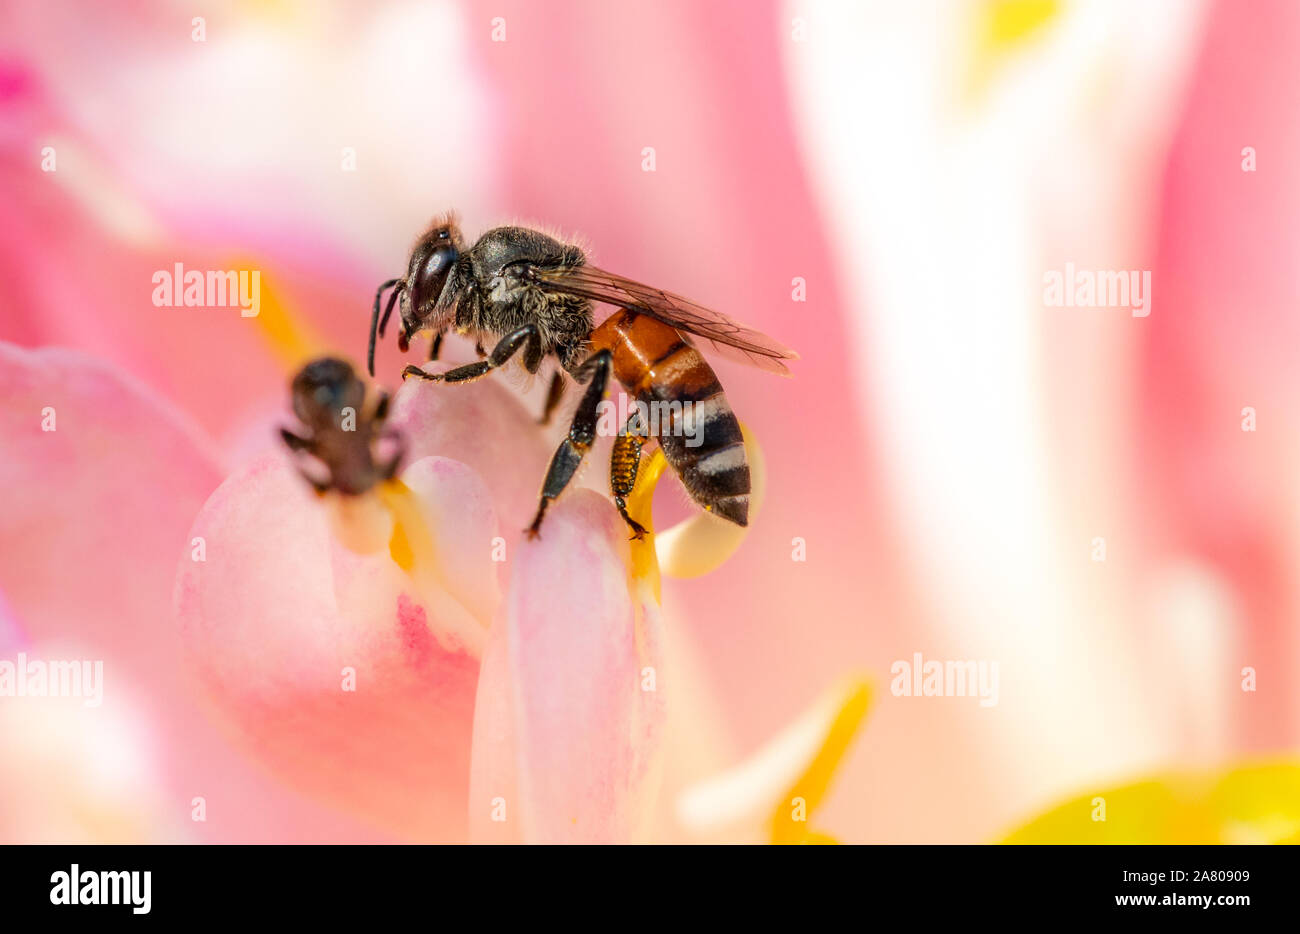 Macro bee on pollen of pink flower. Stock Photo